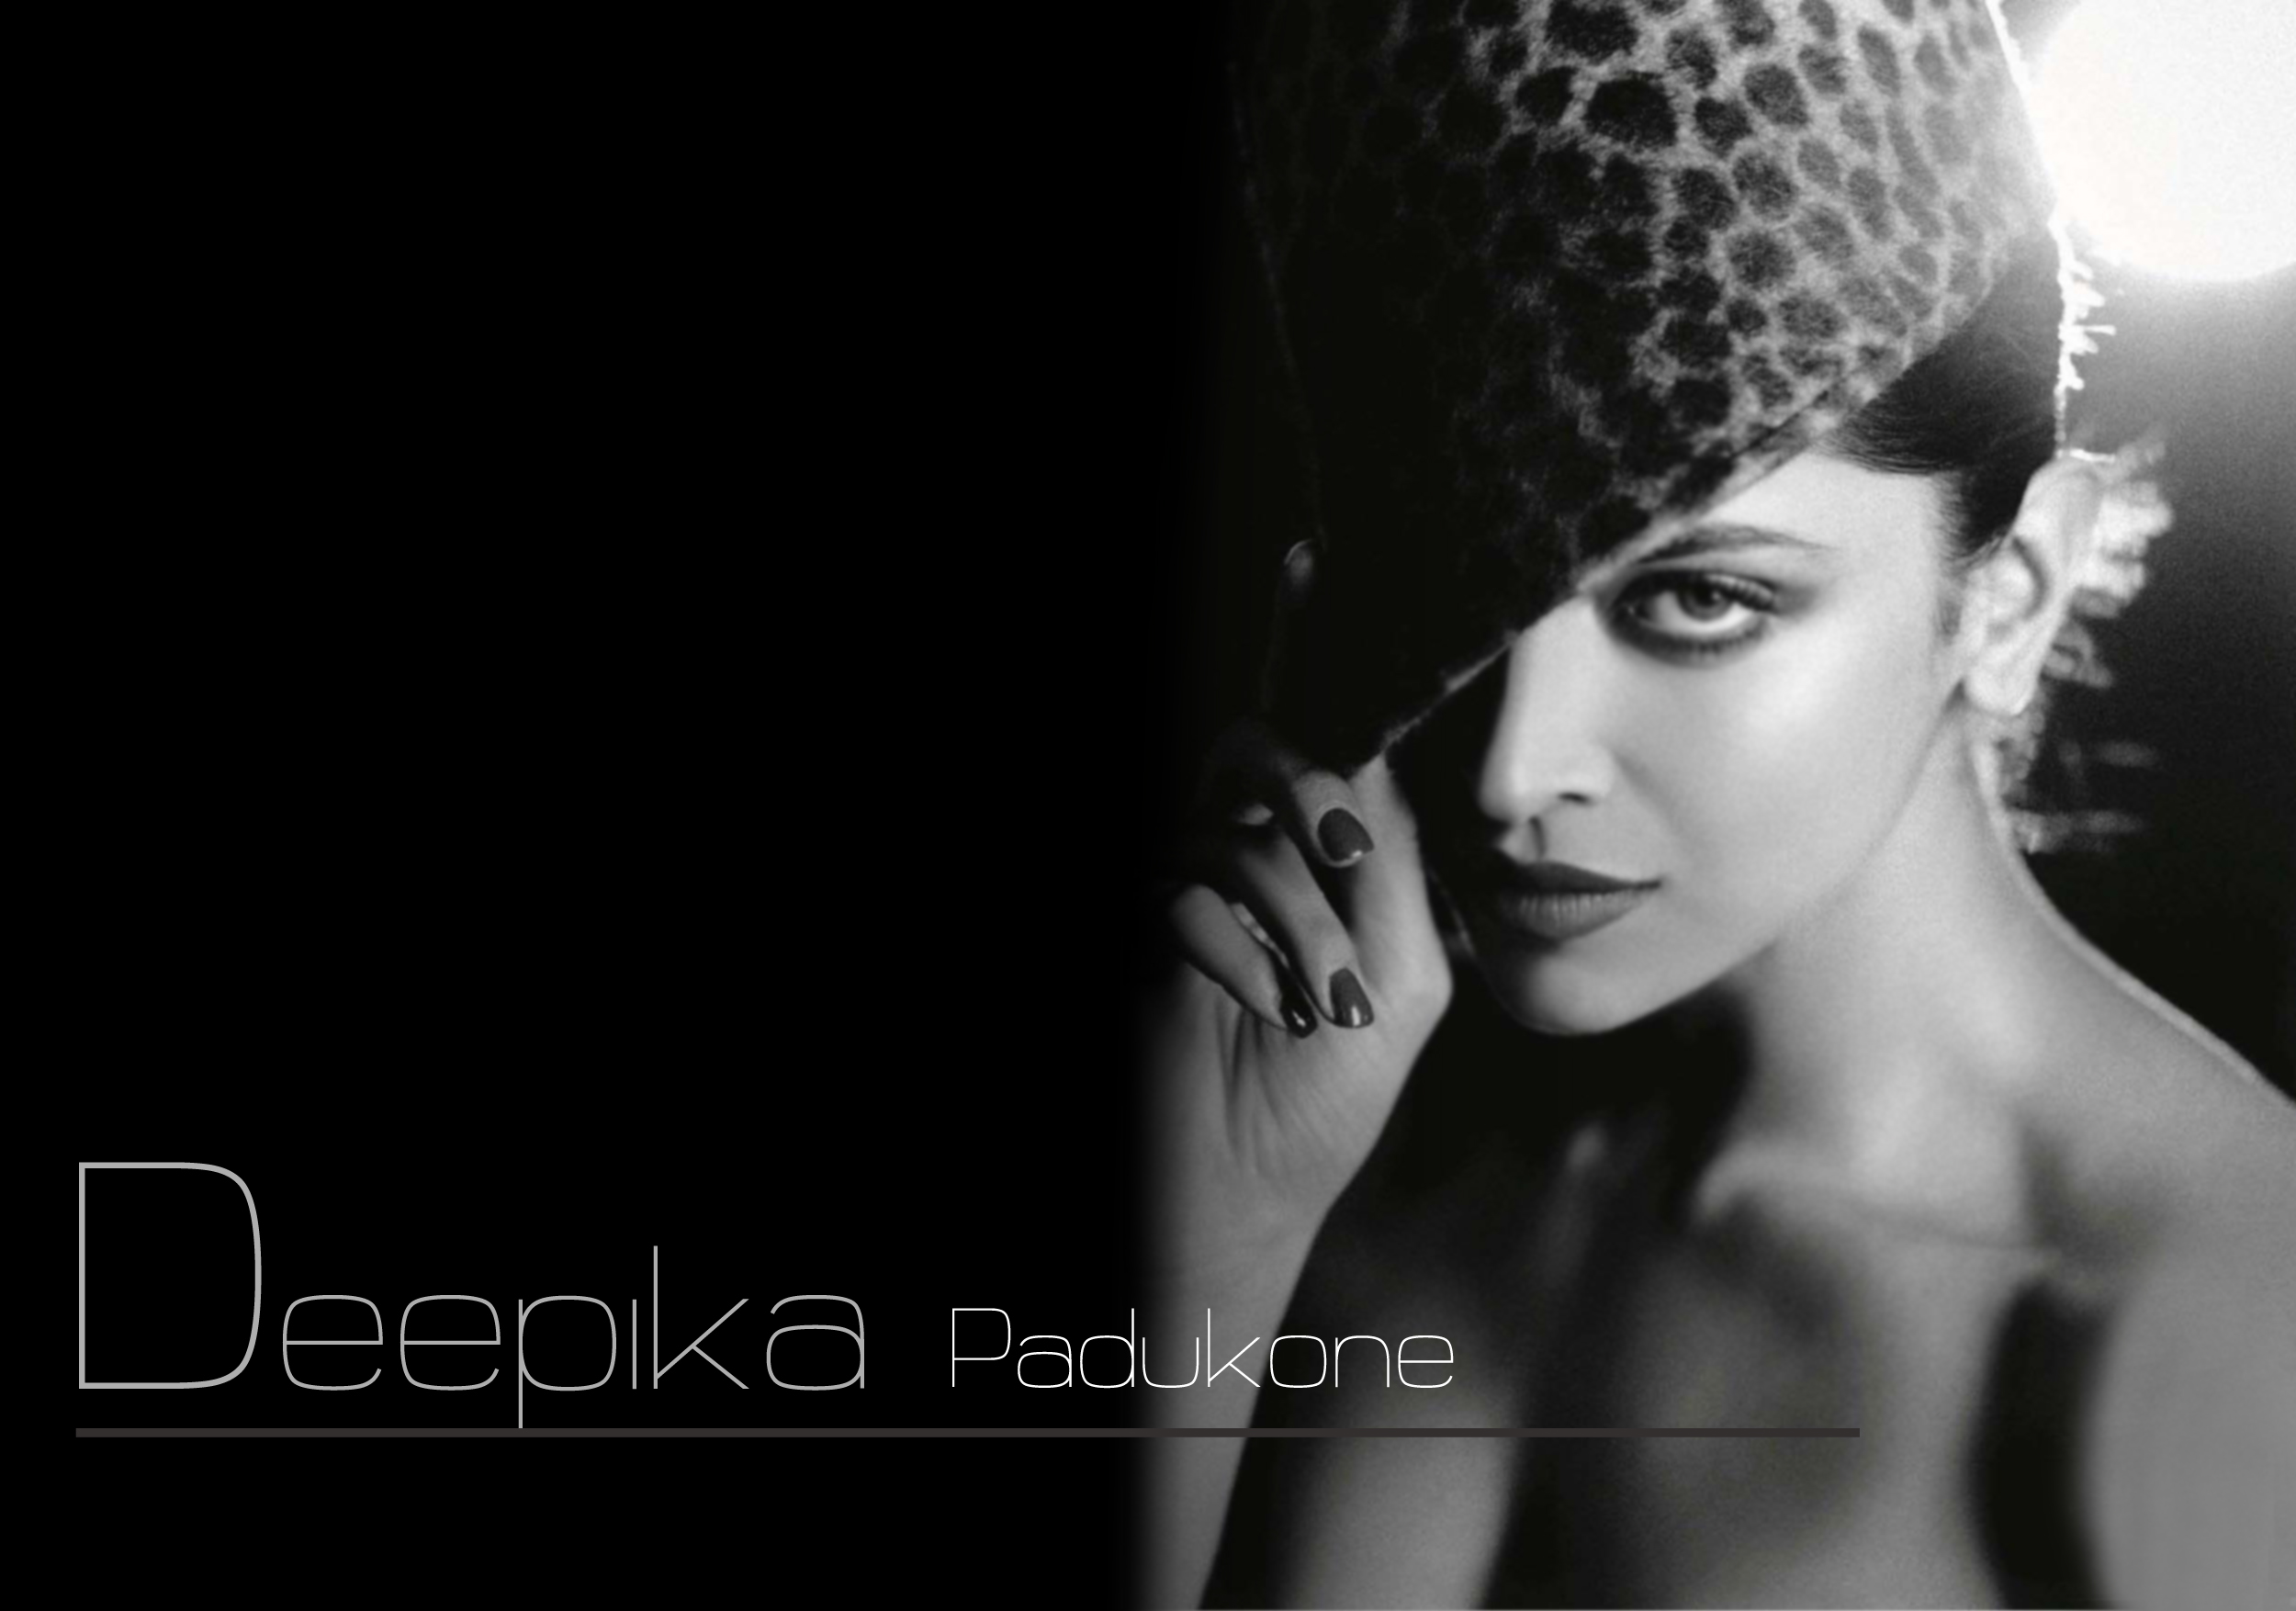 Download Hot Hd Wallpaper Of Deepika Padukone